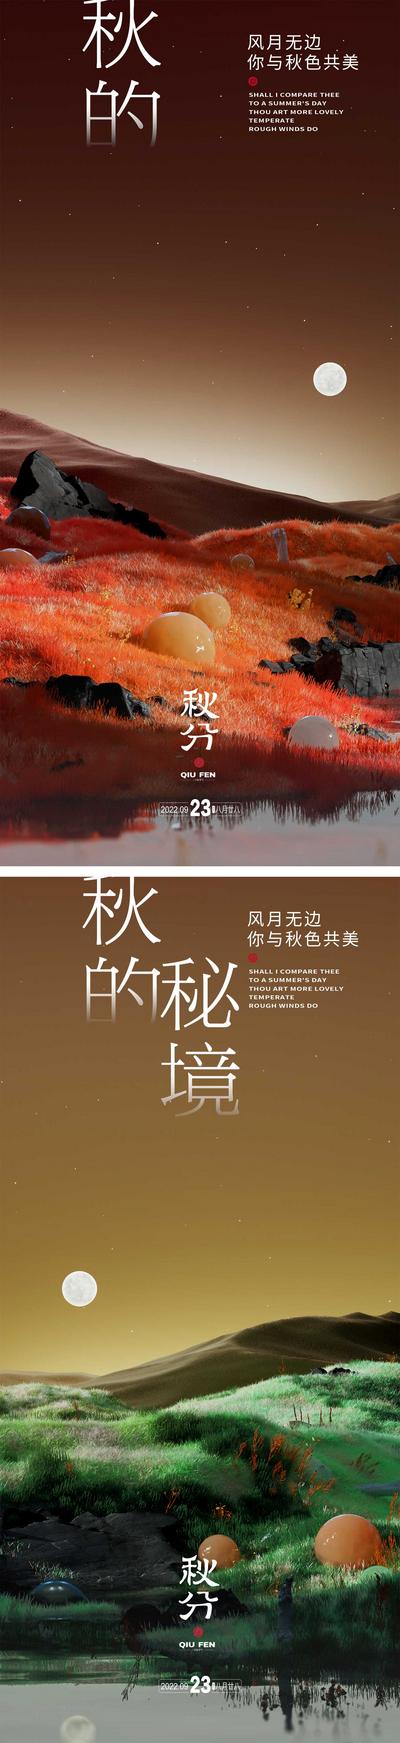 南门网 海报 二十四节气 秋分 秘境 系列